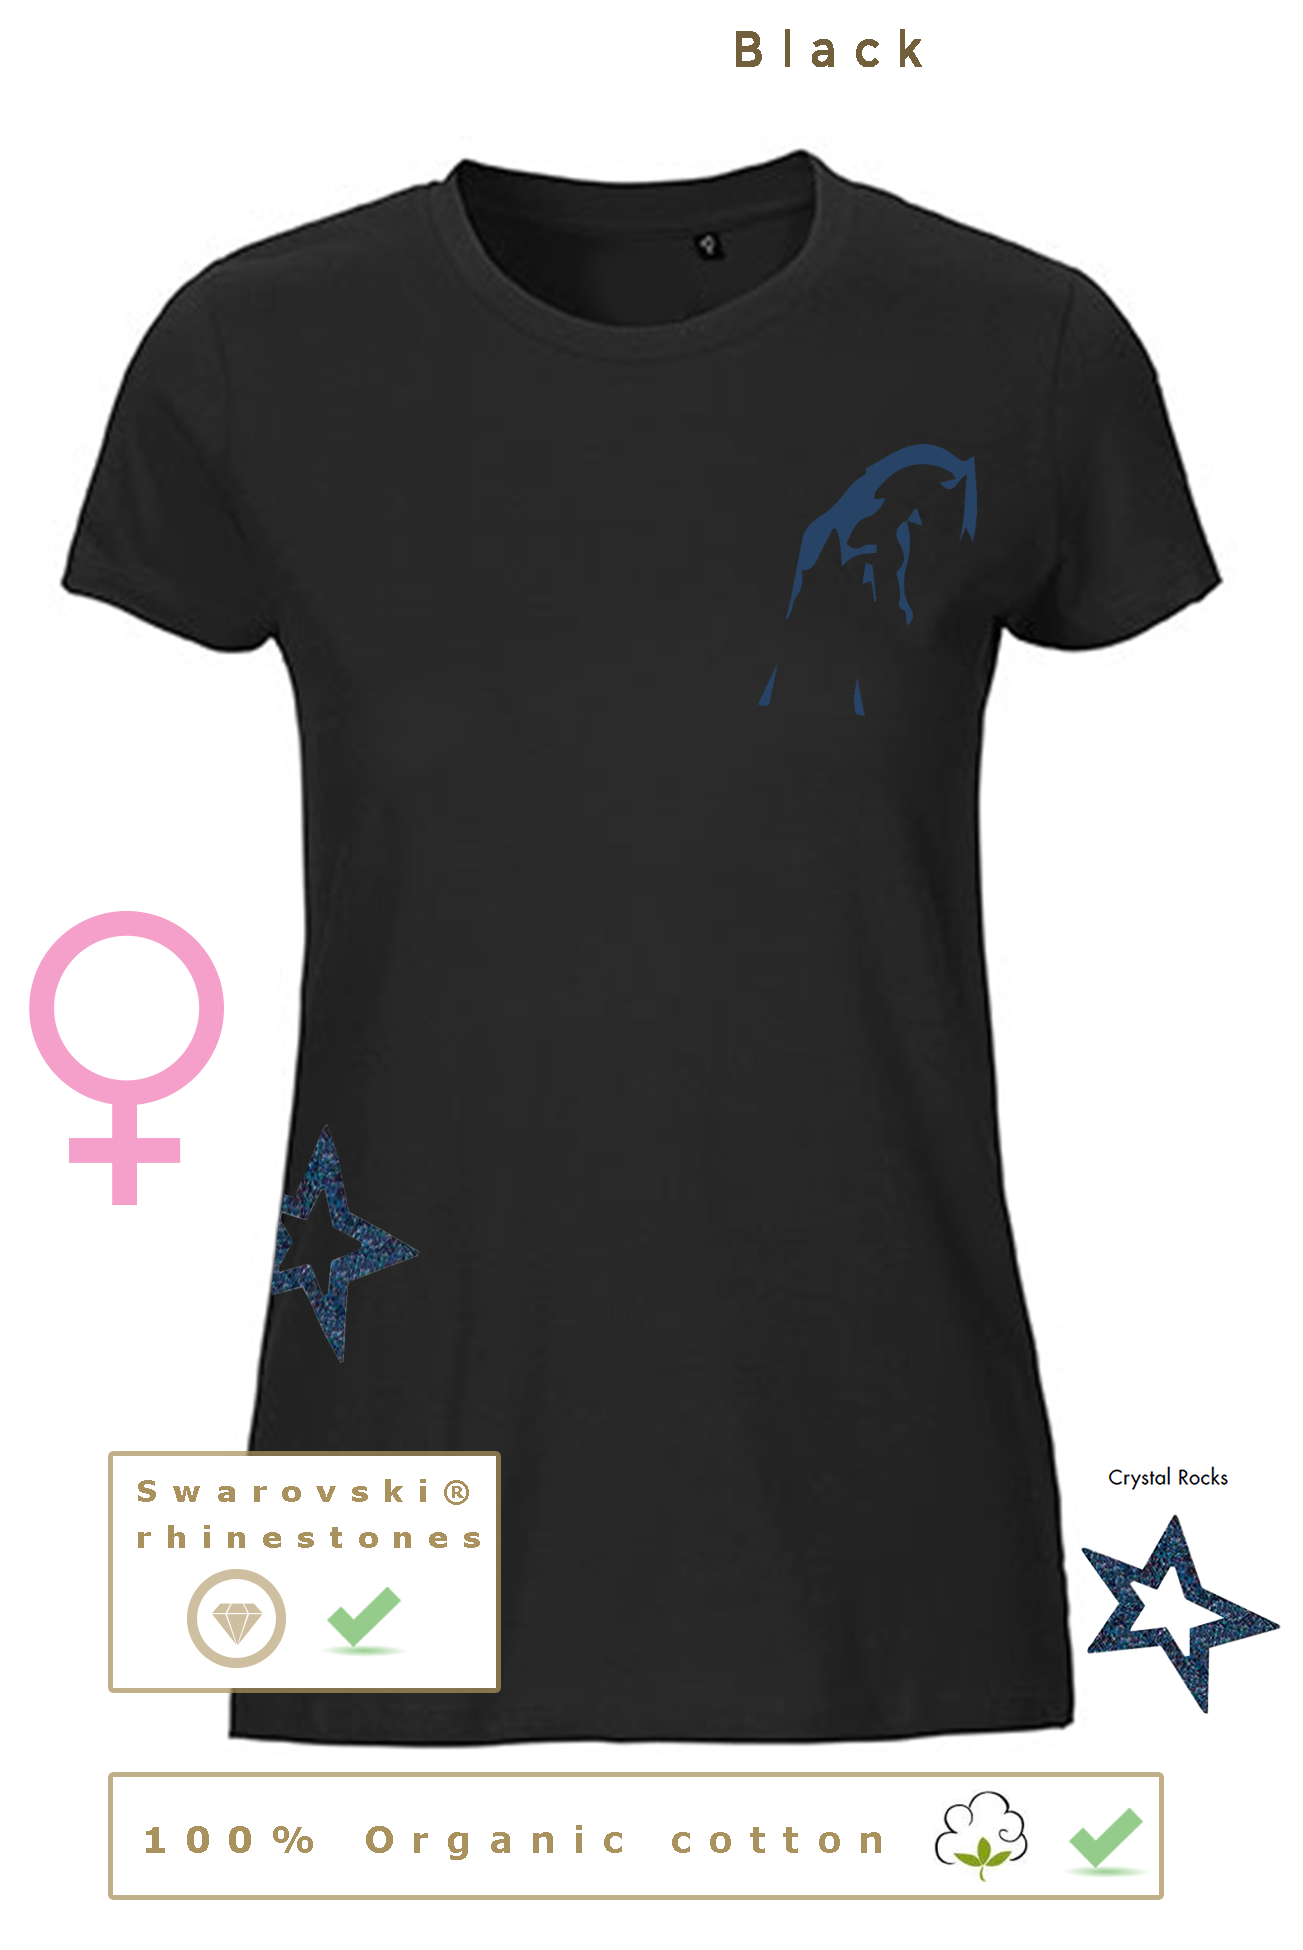 T-shirt BIO, 49€ pour homme/femme & 46€ pour enfant (disponible uniquement en noir)